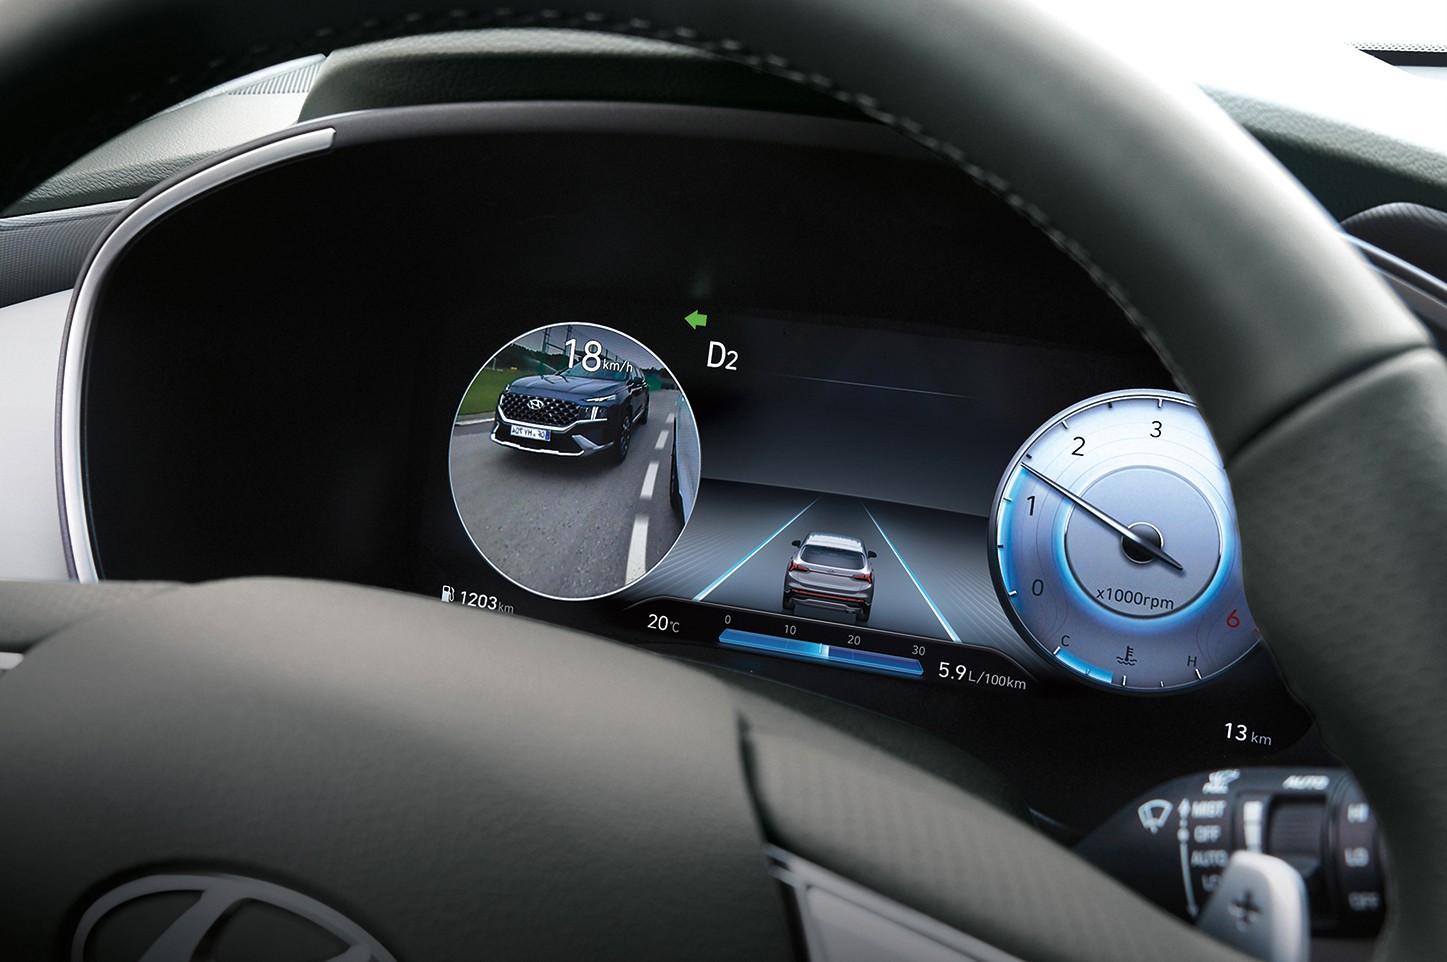 Công nghệ trí tuệ nhân tạo (AI) sẽ được trang bị trên xe Hyundai trong tương lai